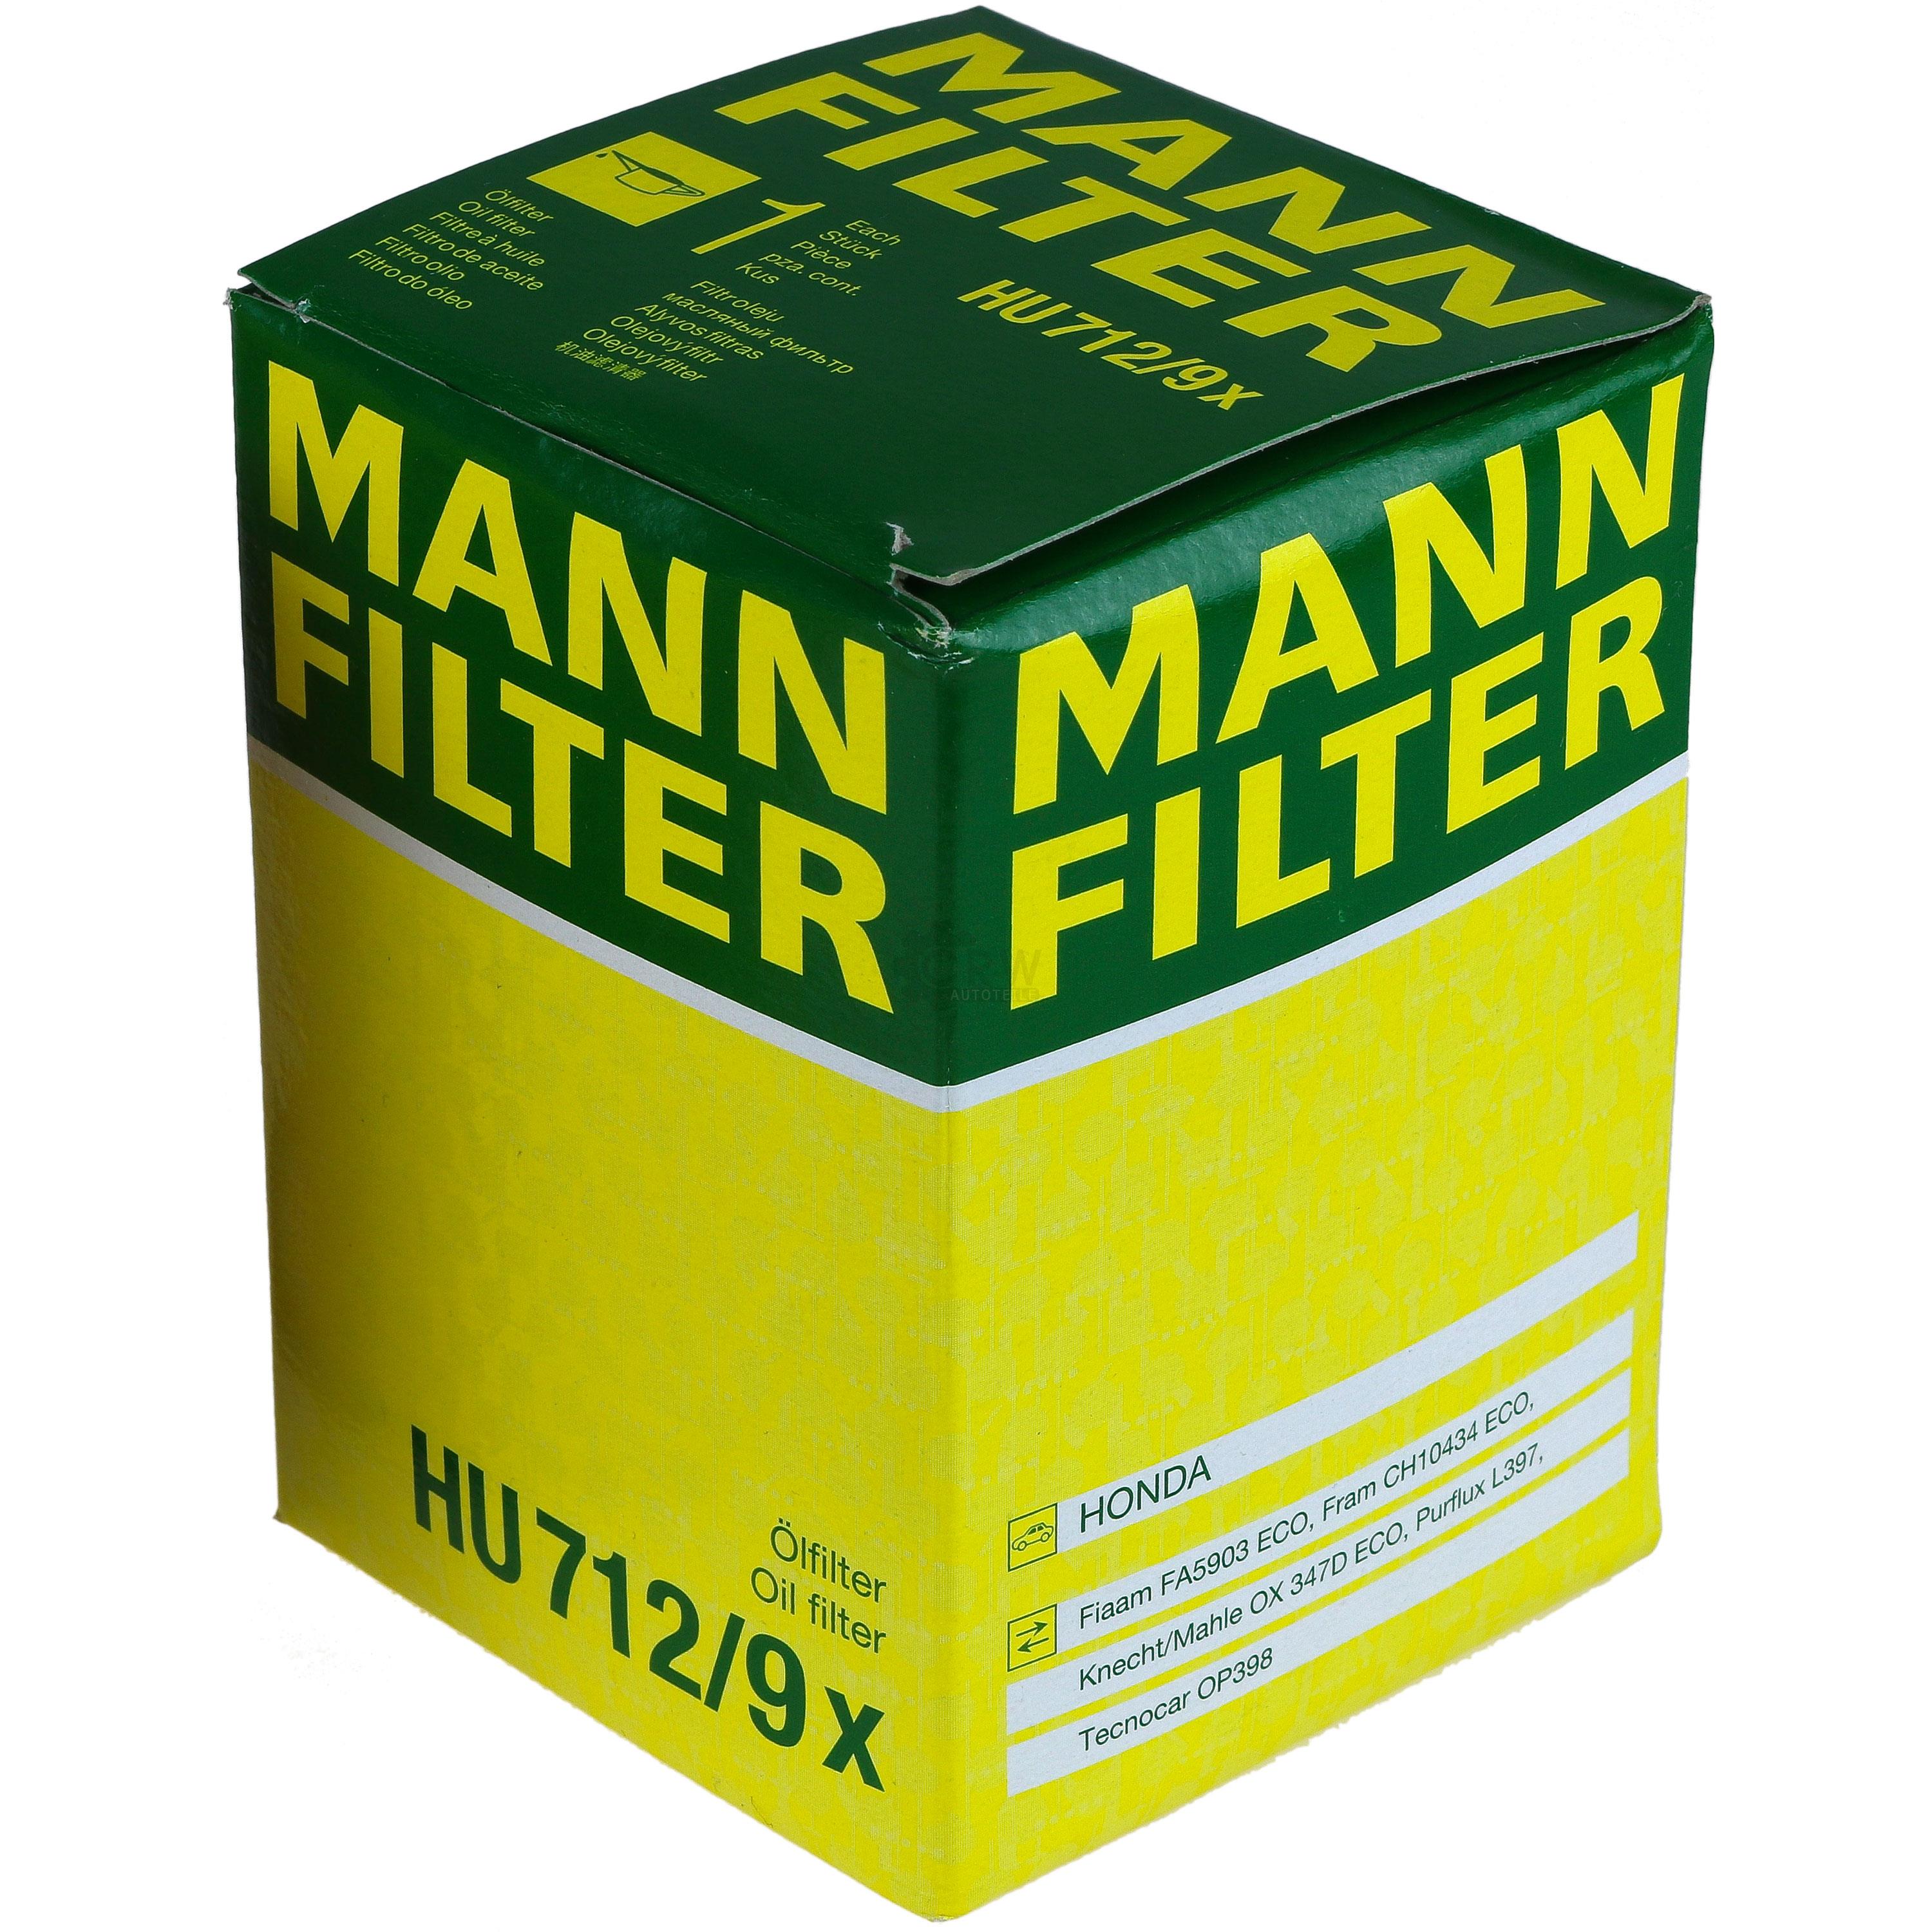 MANN-FILTER Ölfilter HU 712/9 x Oil Filter